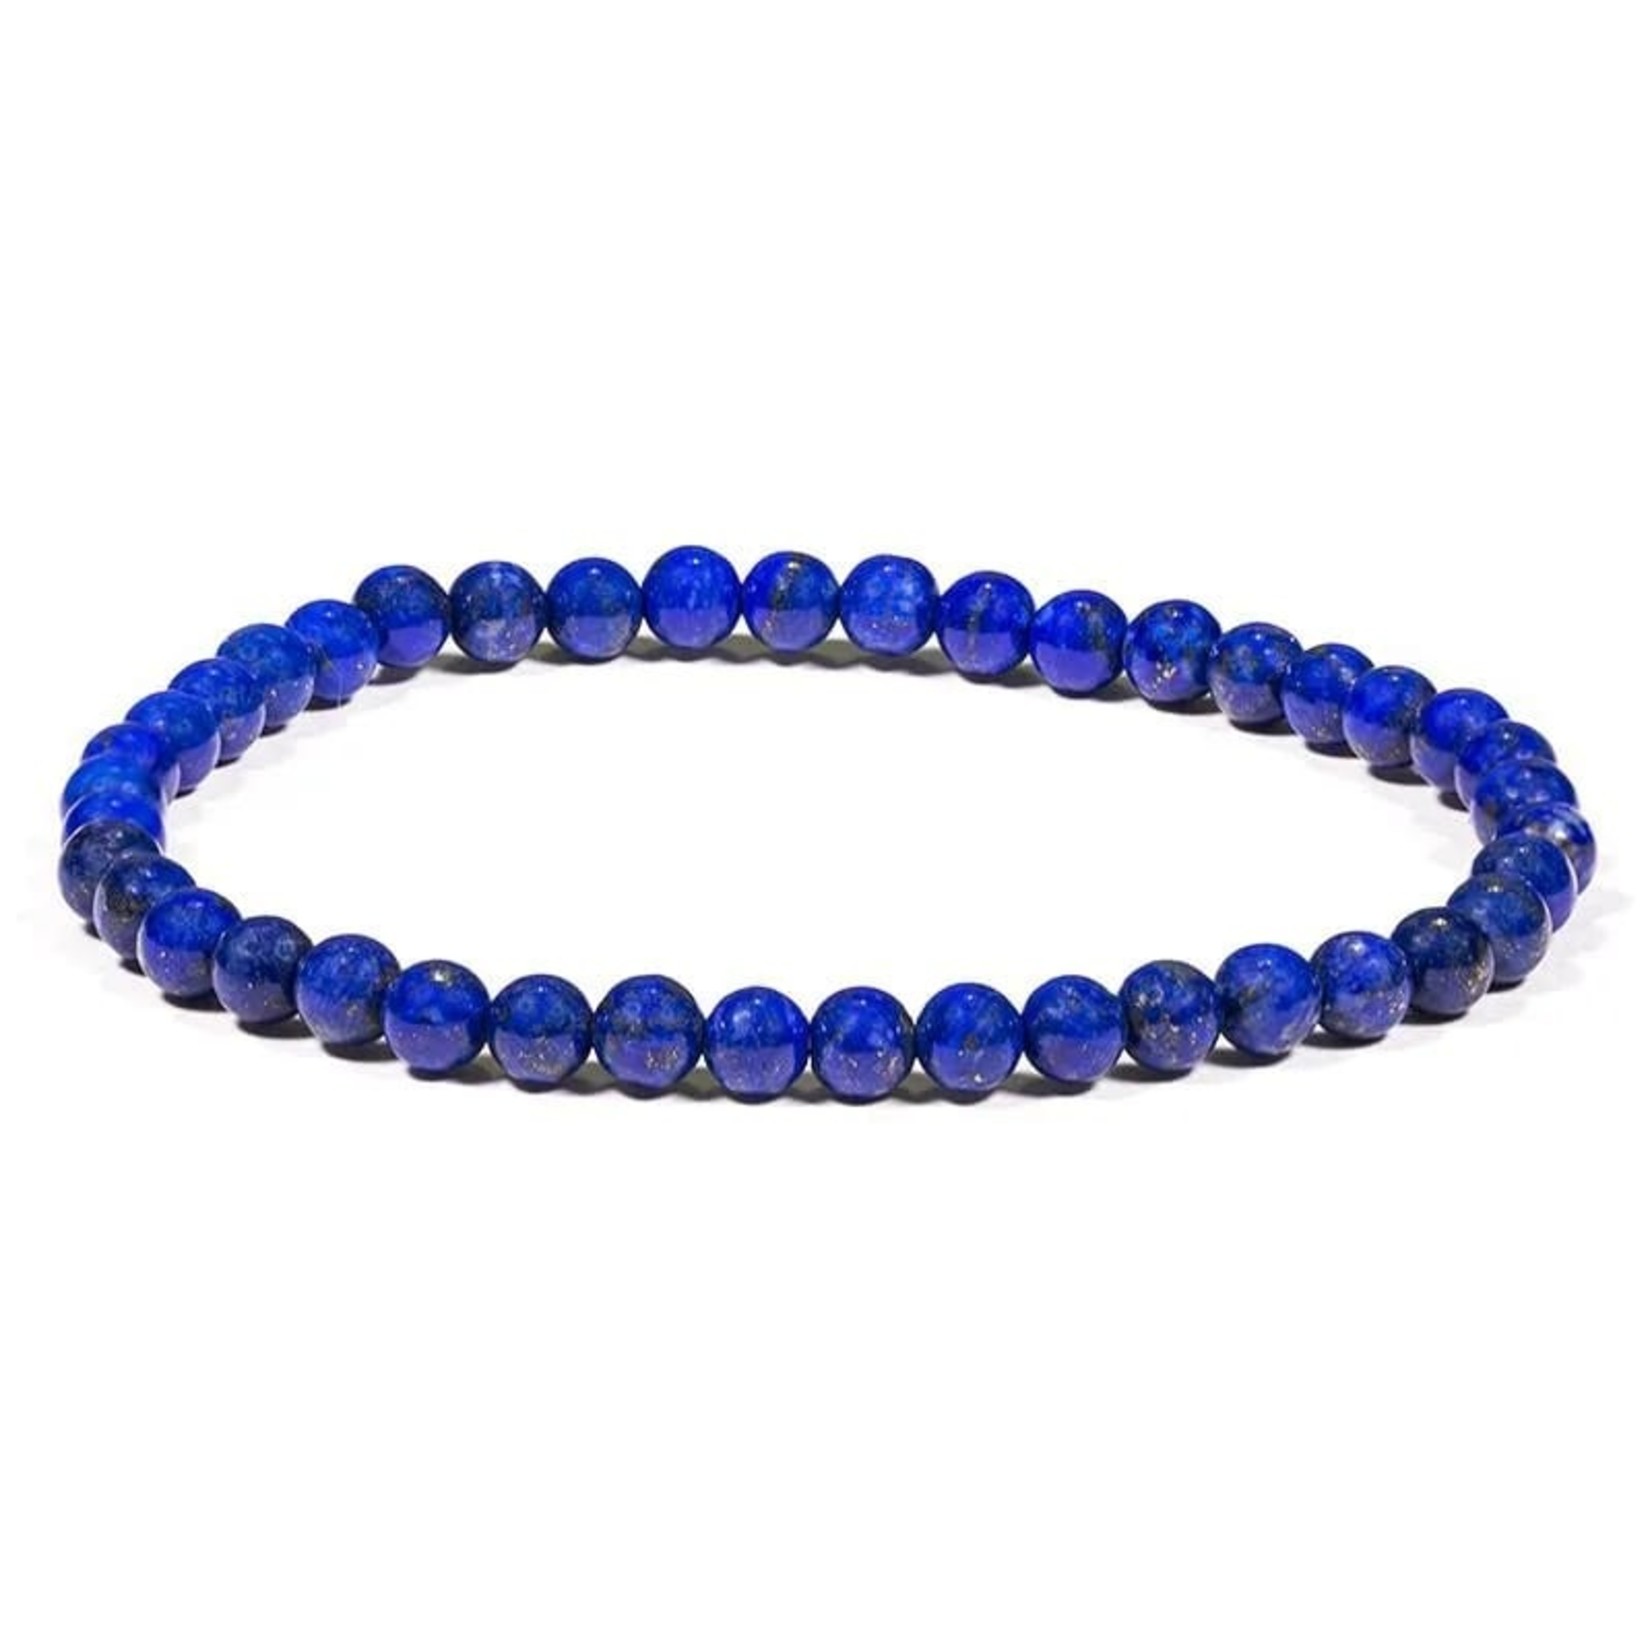 passie zoete smaak Doorbraak Armband Lapis Lazuli - jezelf zijn - De wereld van Nina